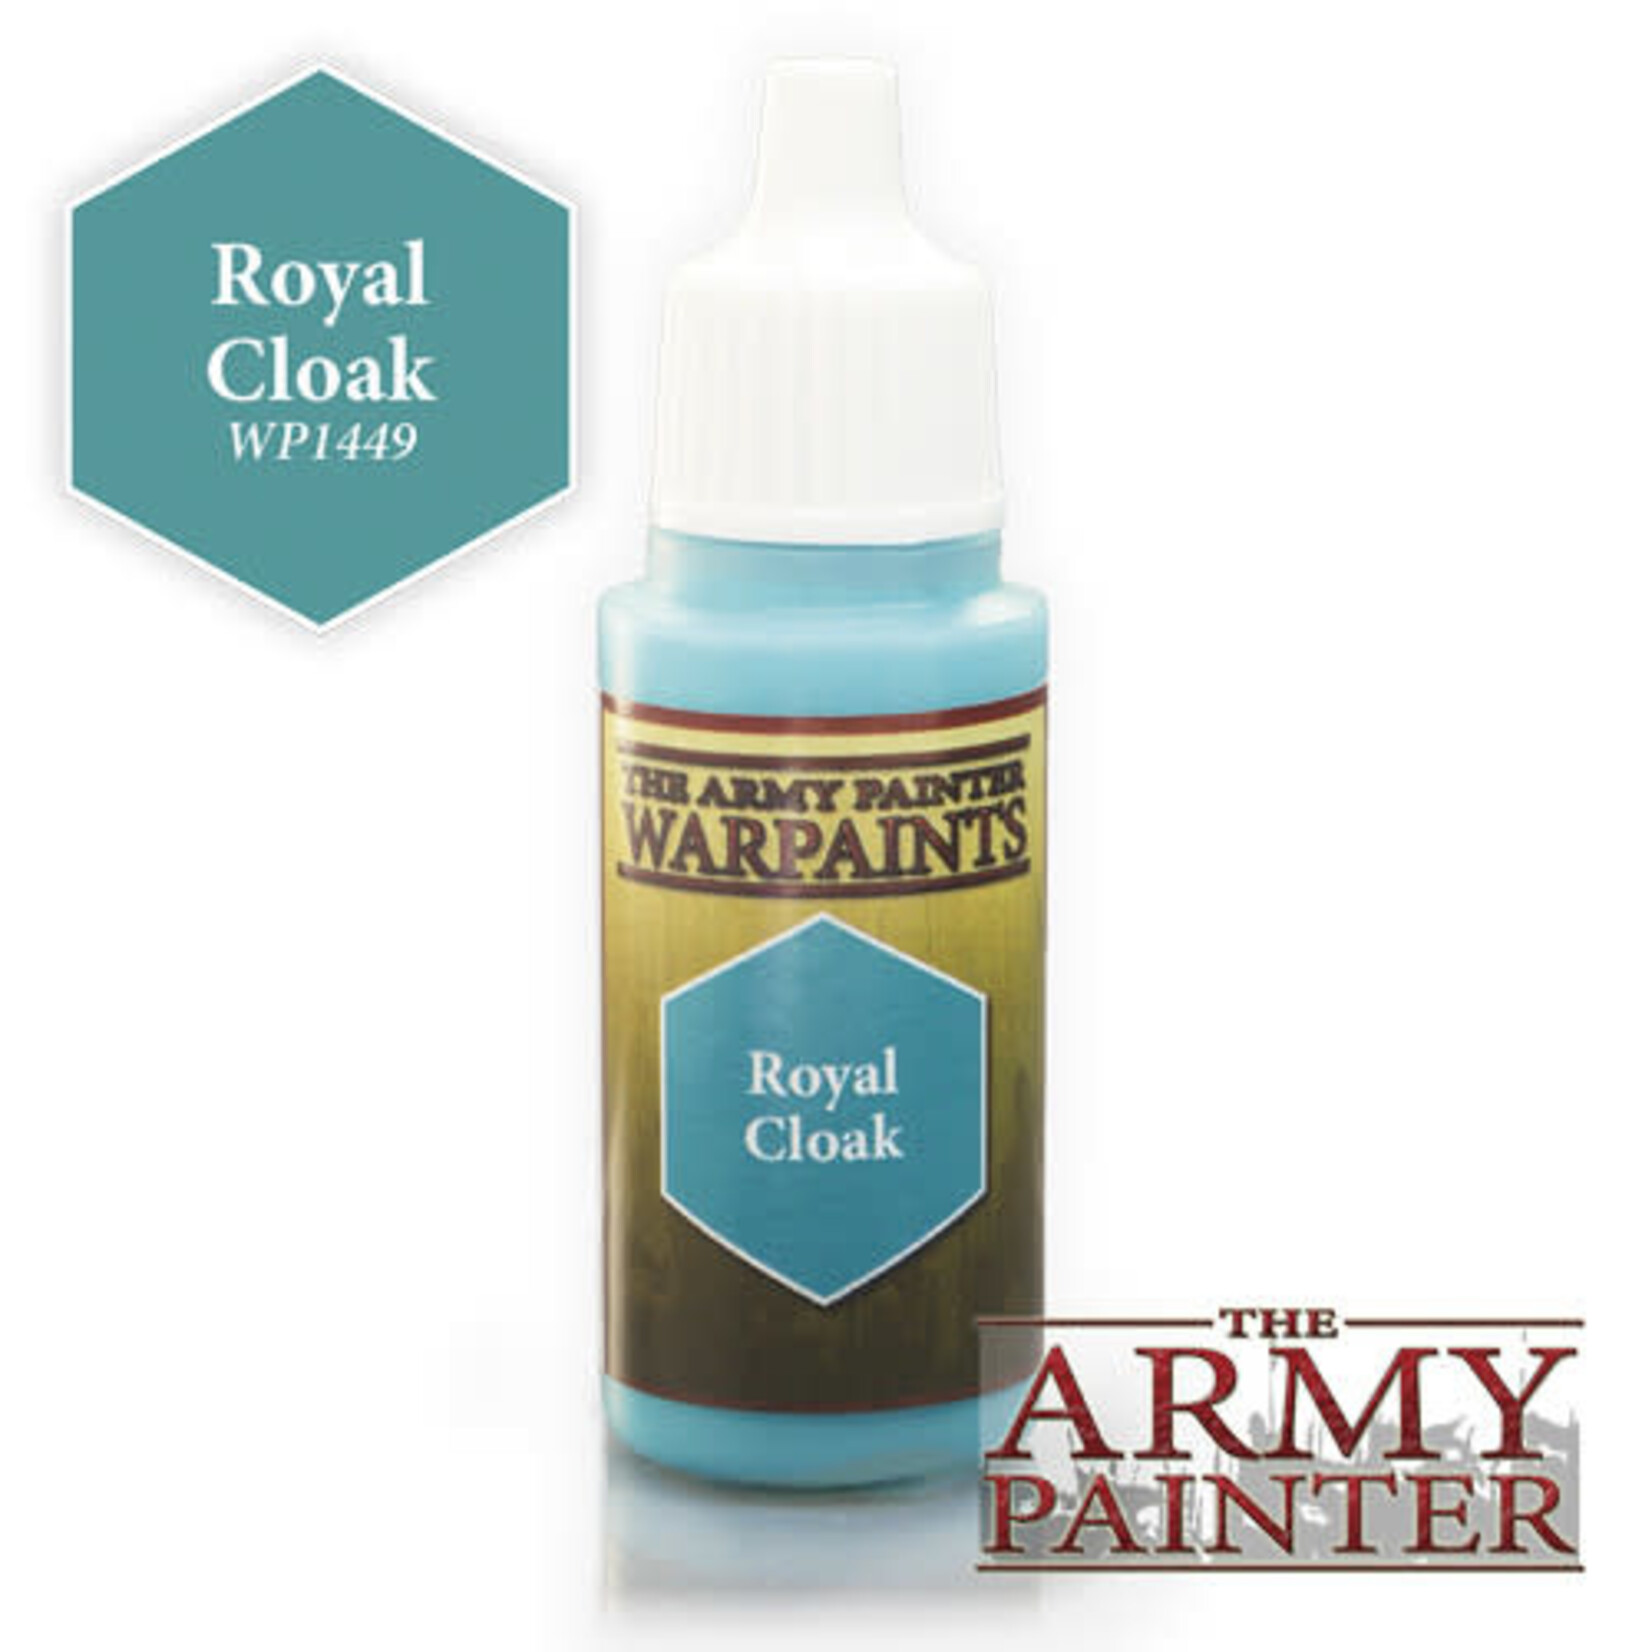 The Army Painter Warpaints: Royal Cloak 18ml